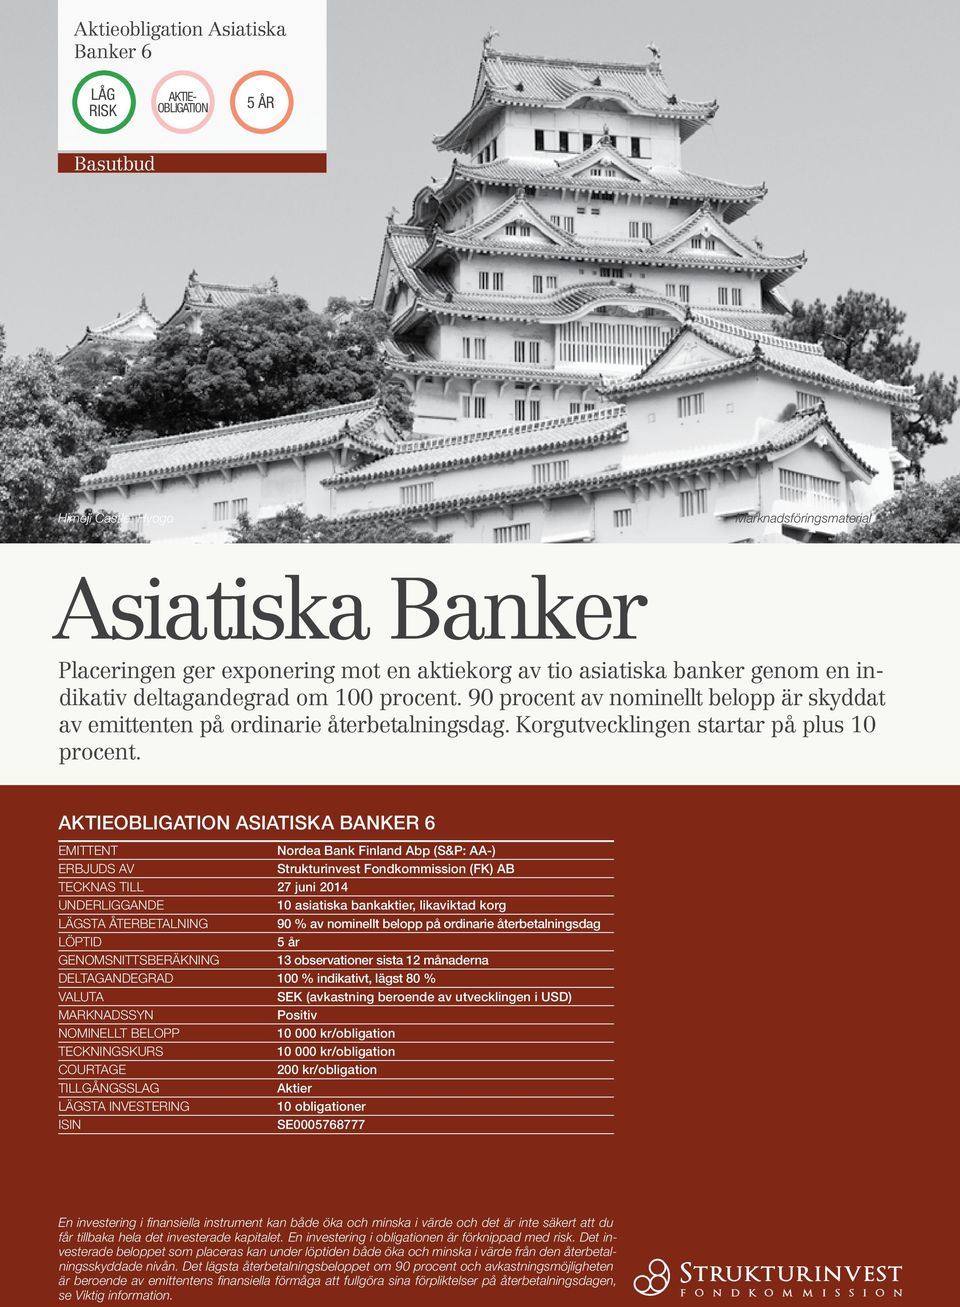 Aktieobligation Asiatiska Banker 6 Emittent Nordea Bank Finland Abp (S&P: AA-) ERBJUDS AV Strukturinvest Fondkommission (FK) AB Tecknas till 27 juni 2014 Underliggande 10 asiatiska bankaktier,